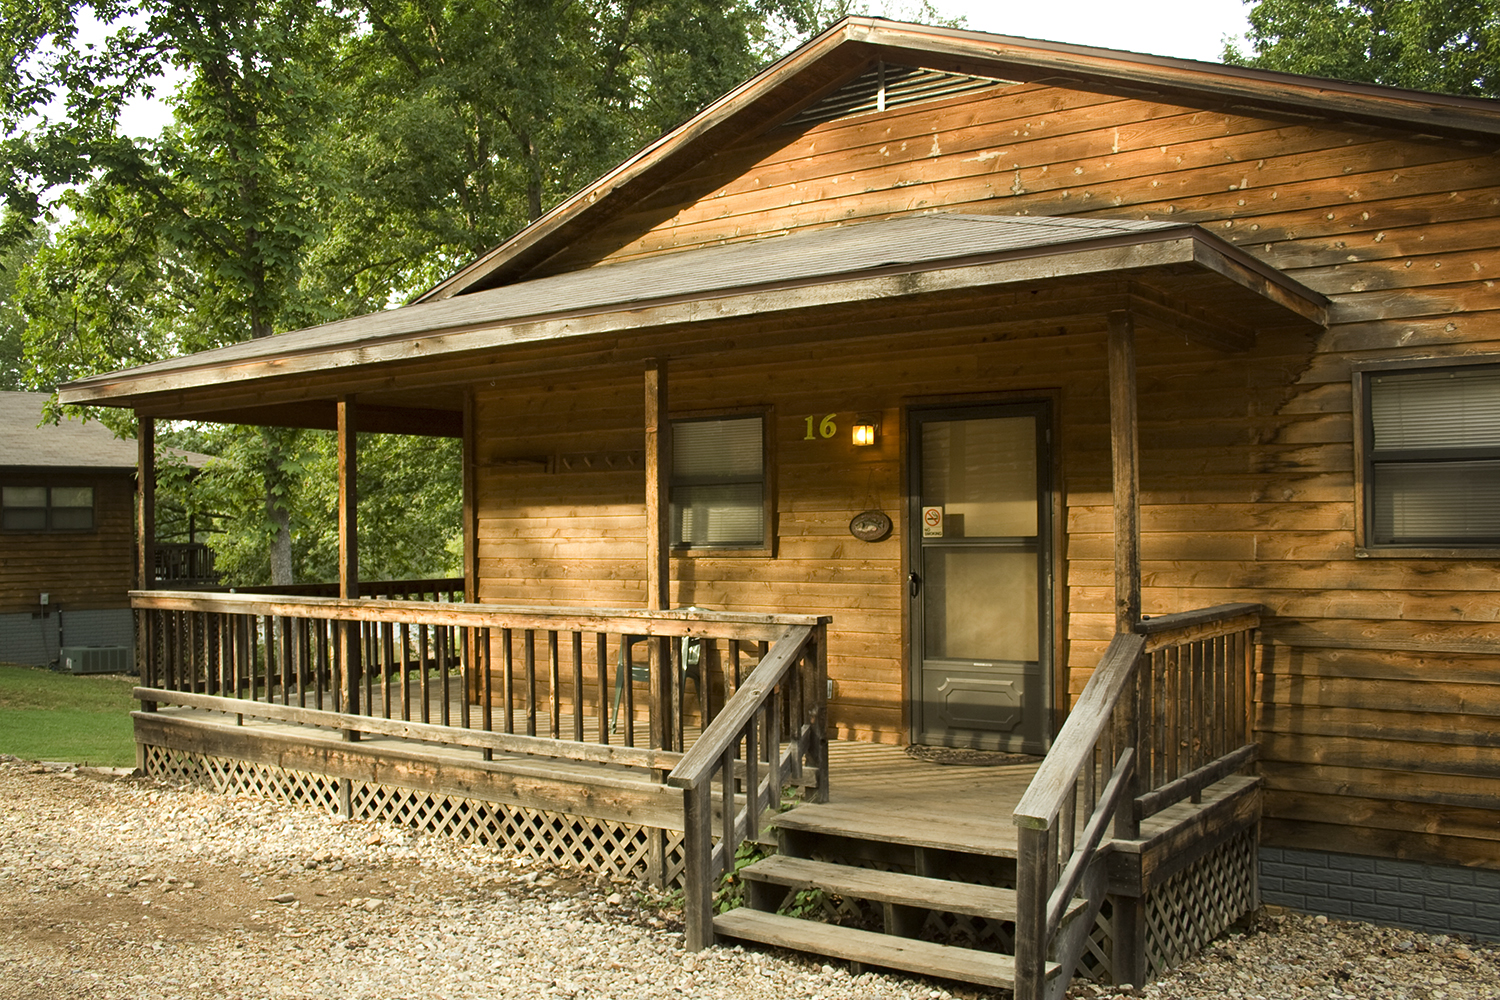 Cabin No. 16